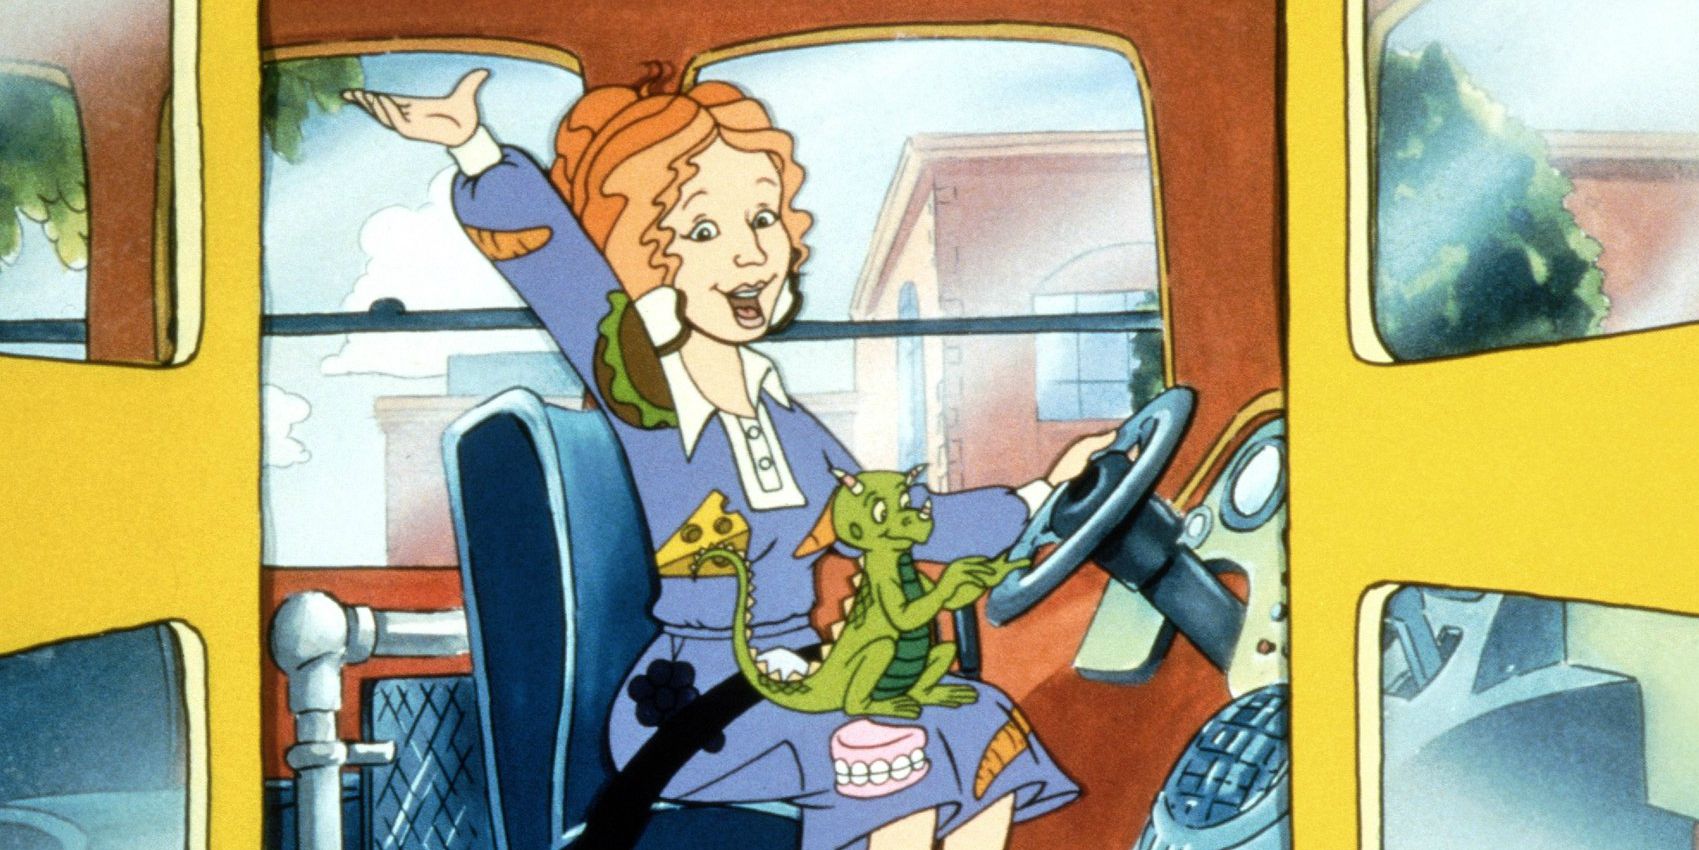 Magic School Bus LiveAction Movie Casts Elizabeth Banks As Ms. Frizzle